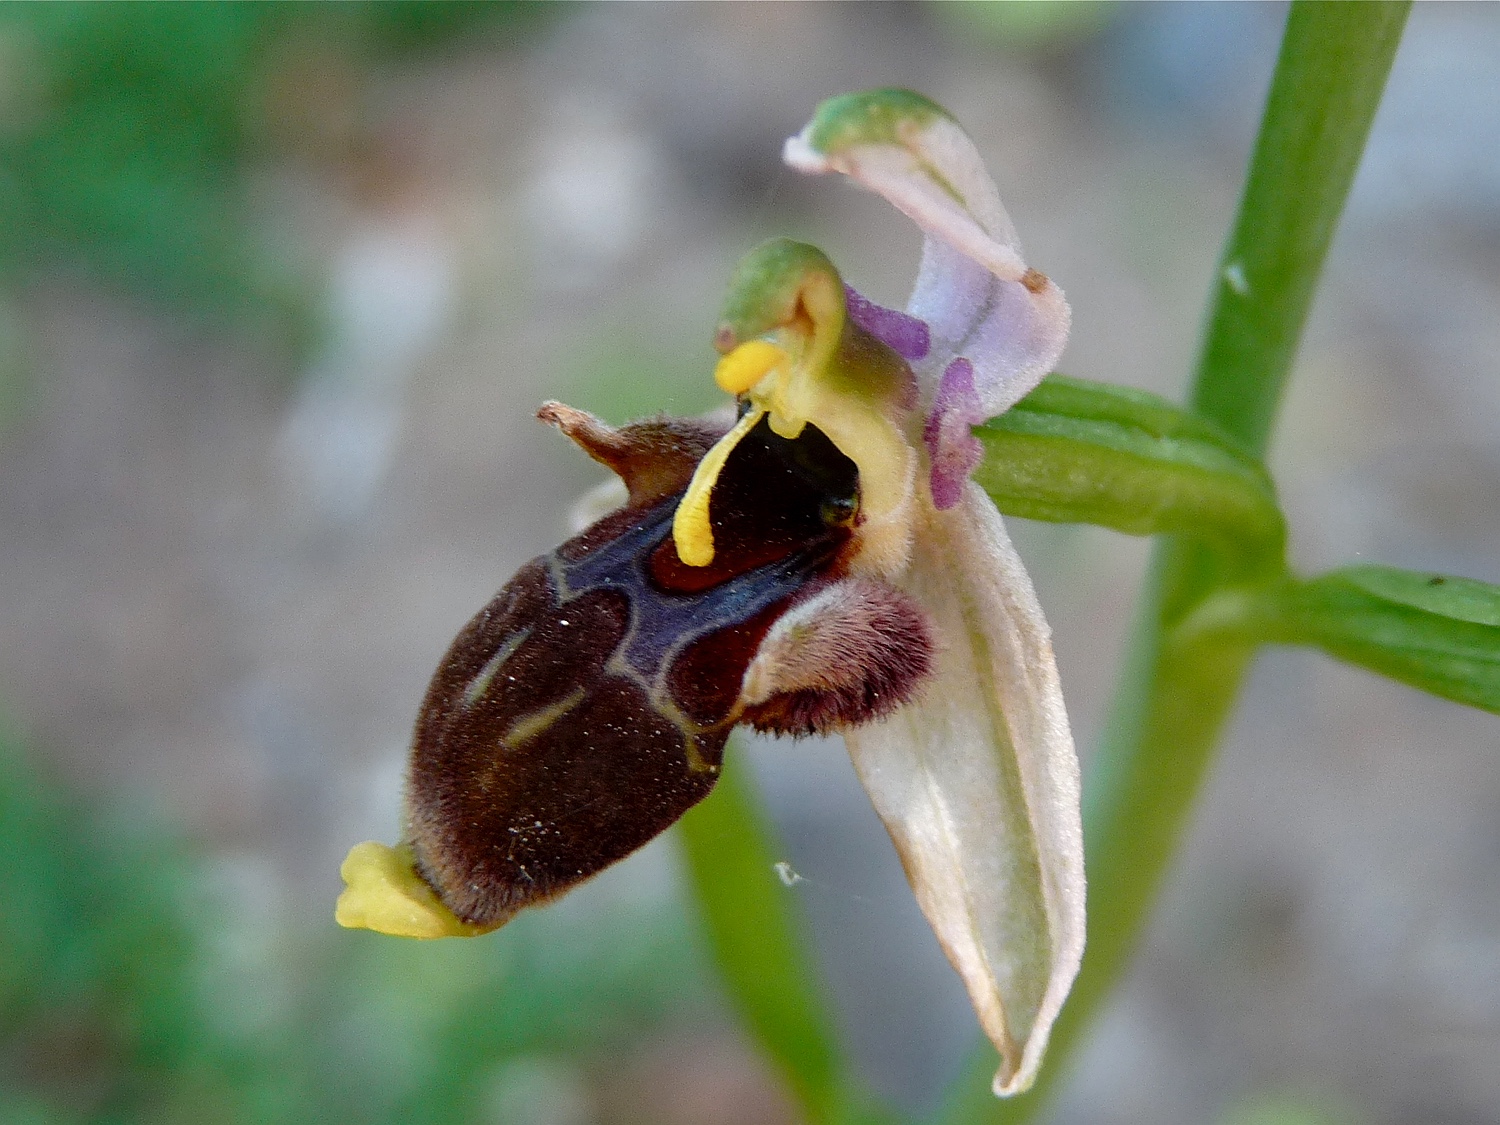 Ophrys scolopax heldreichi mit Pollinarien